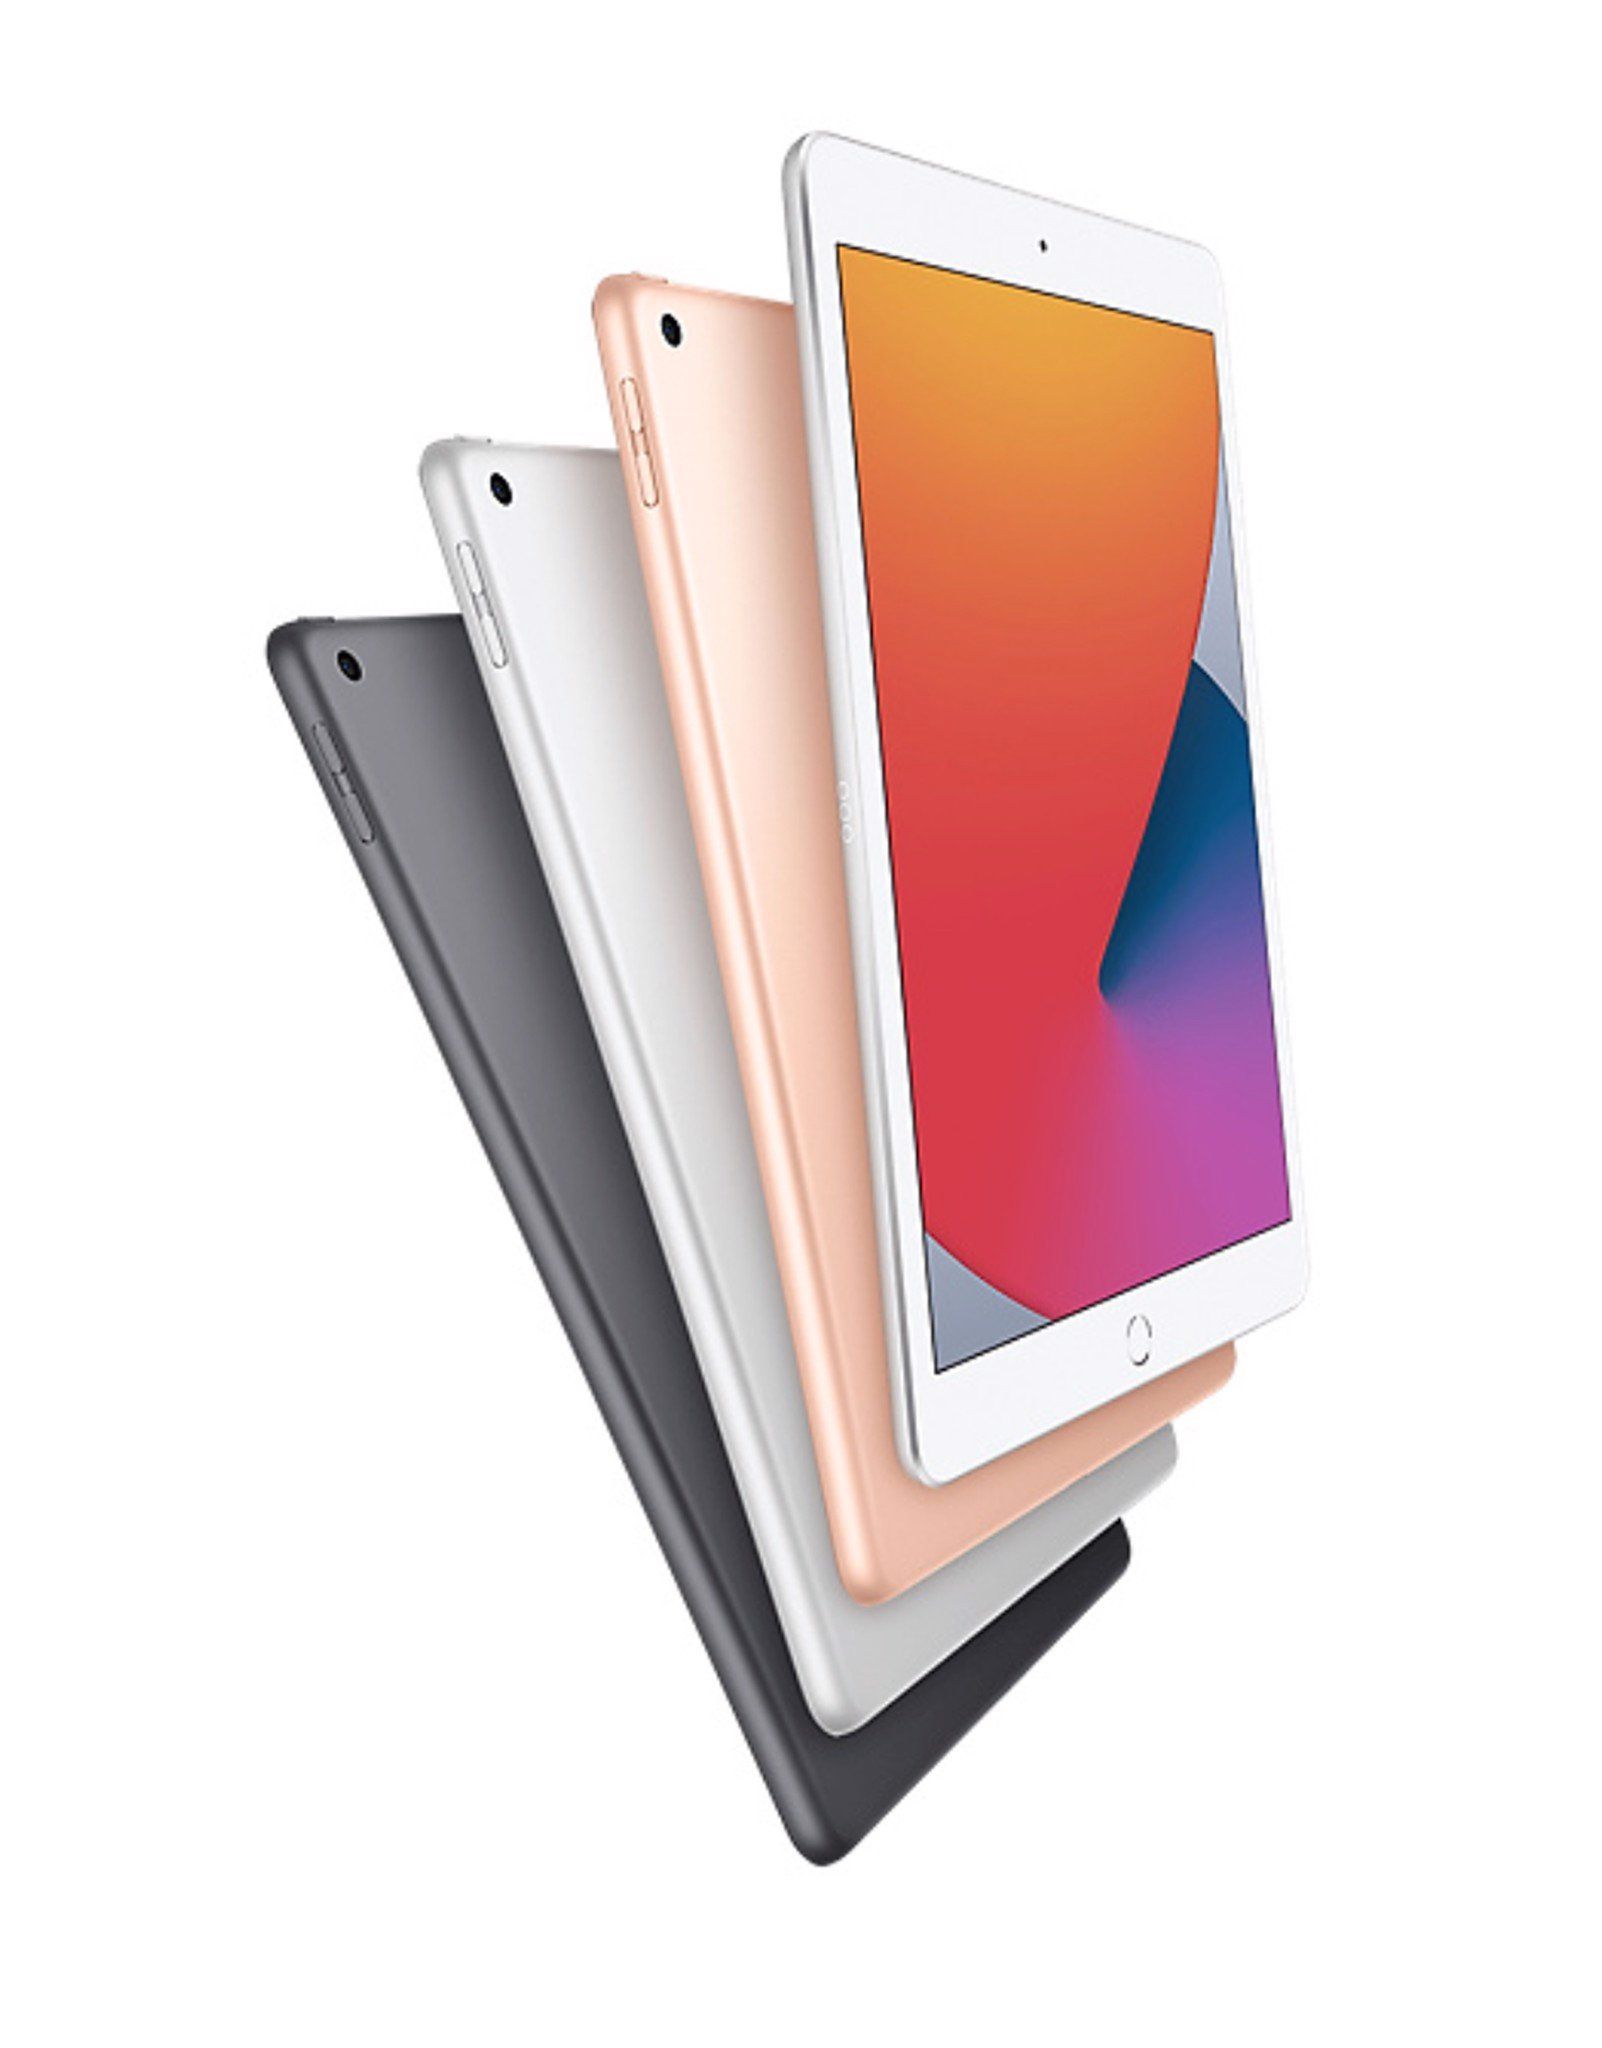 iPad Gen 8 2020 10.2inch Wifi + 4G - 128GB Nguyên Seal - Chưa Active